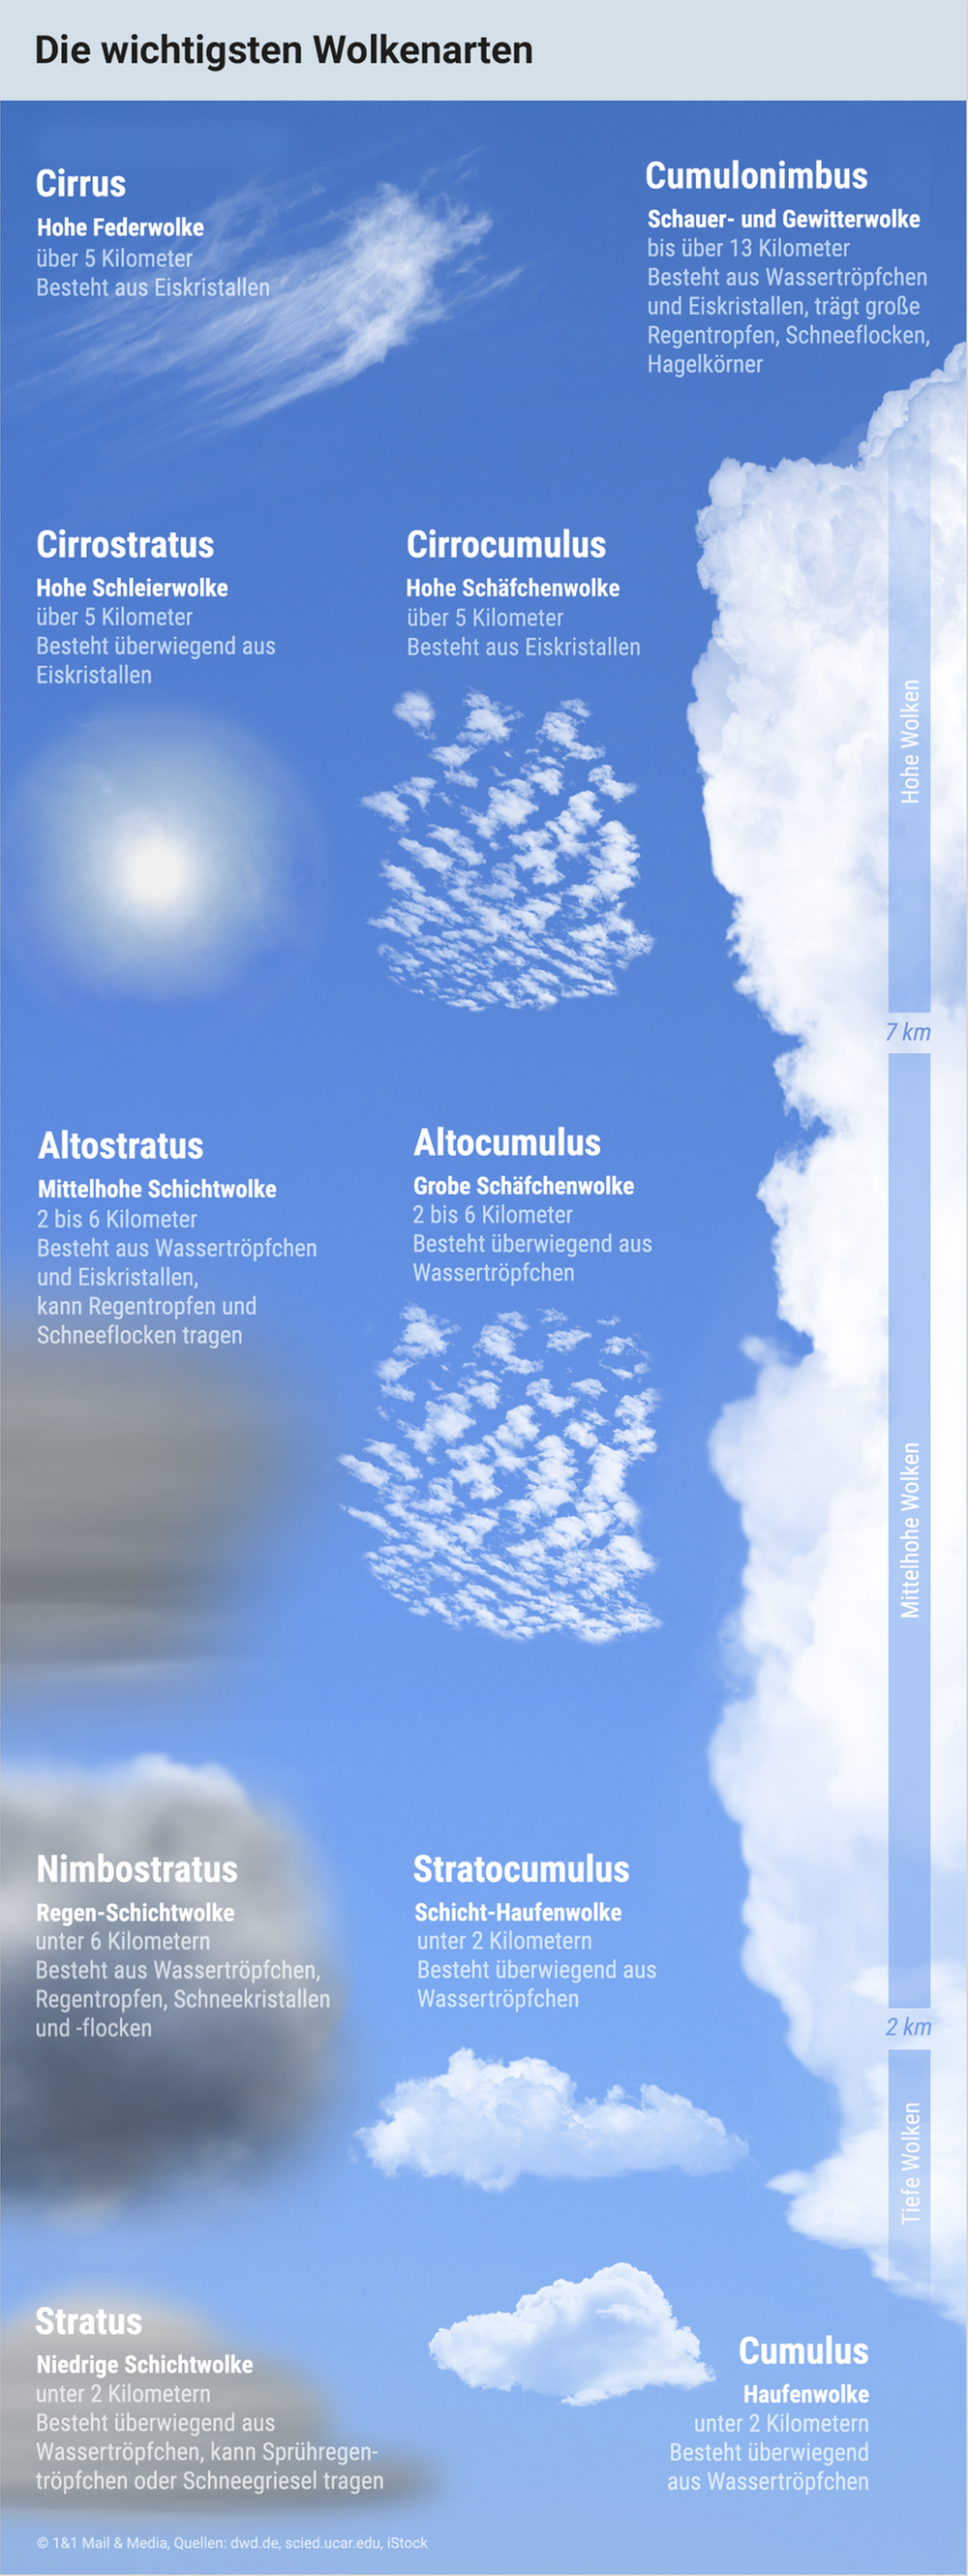 Die wichtigsten Wolkenarten, die sich in der Troposphäre bilden